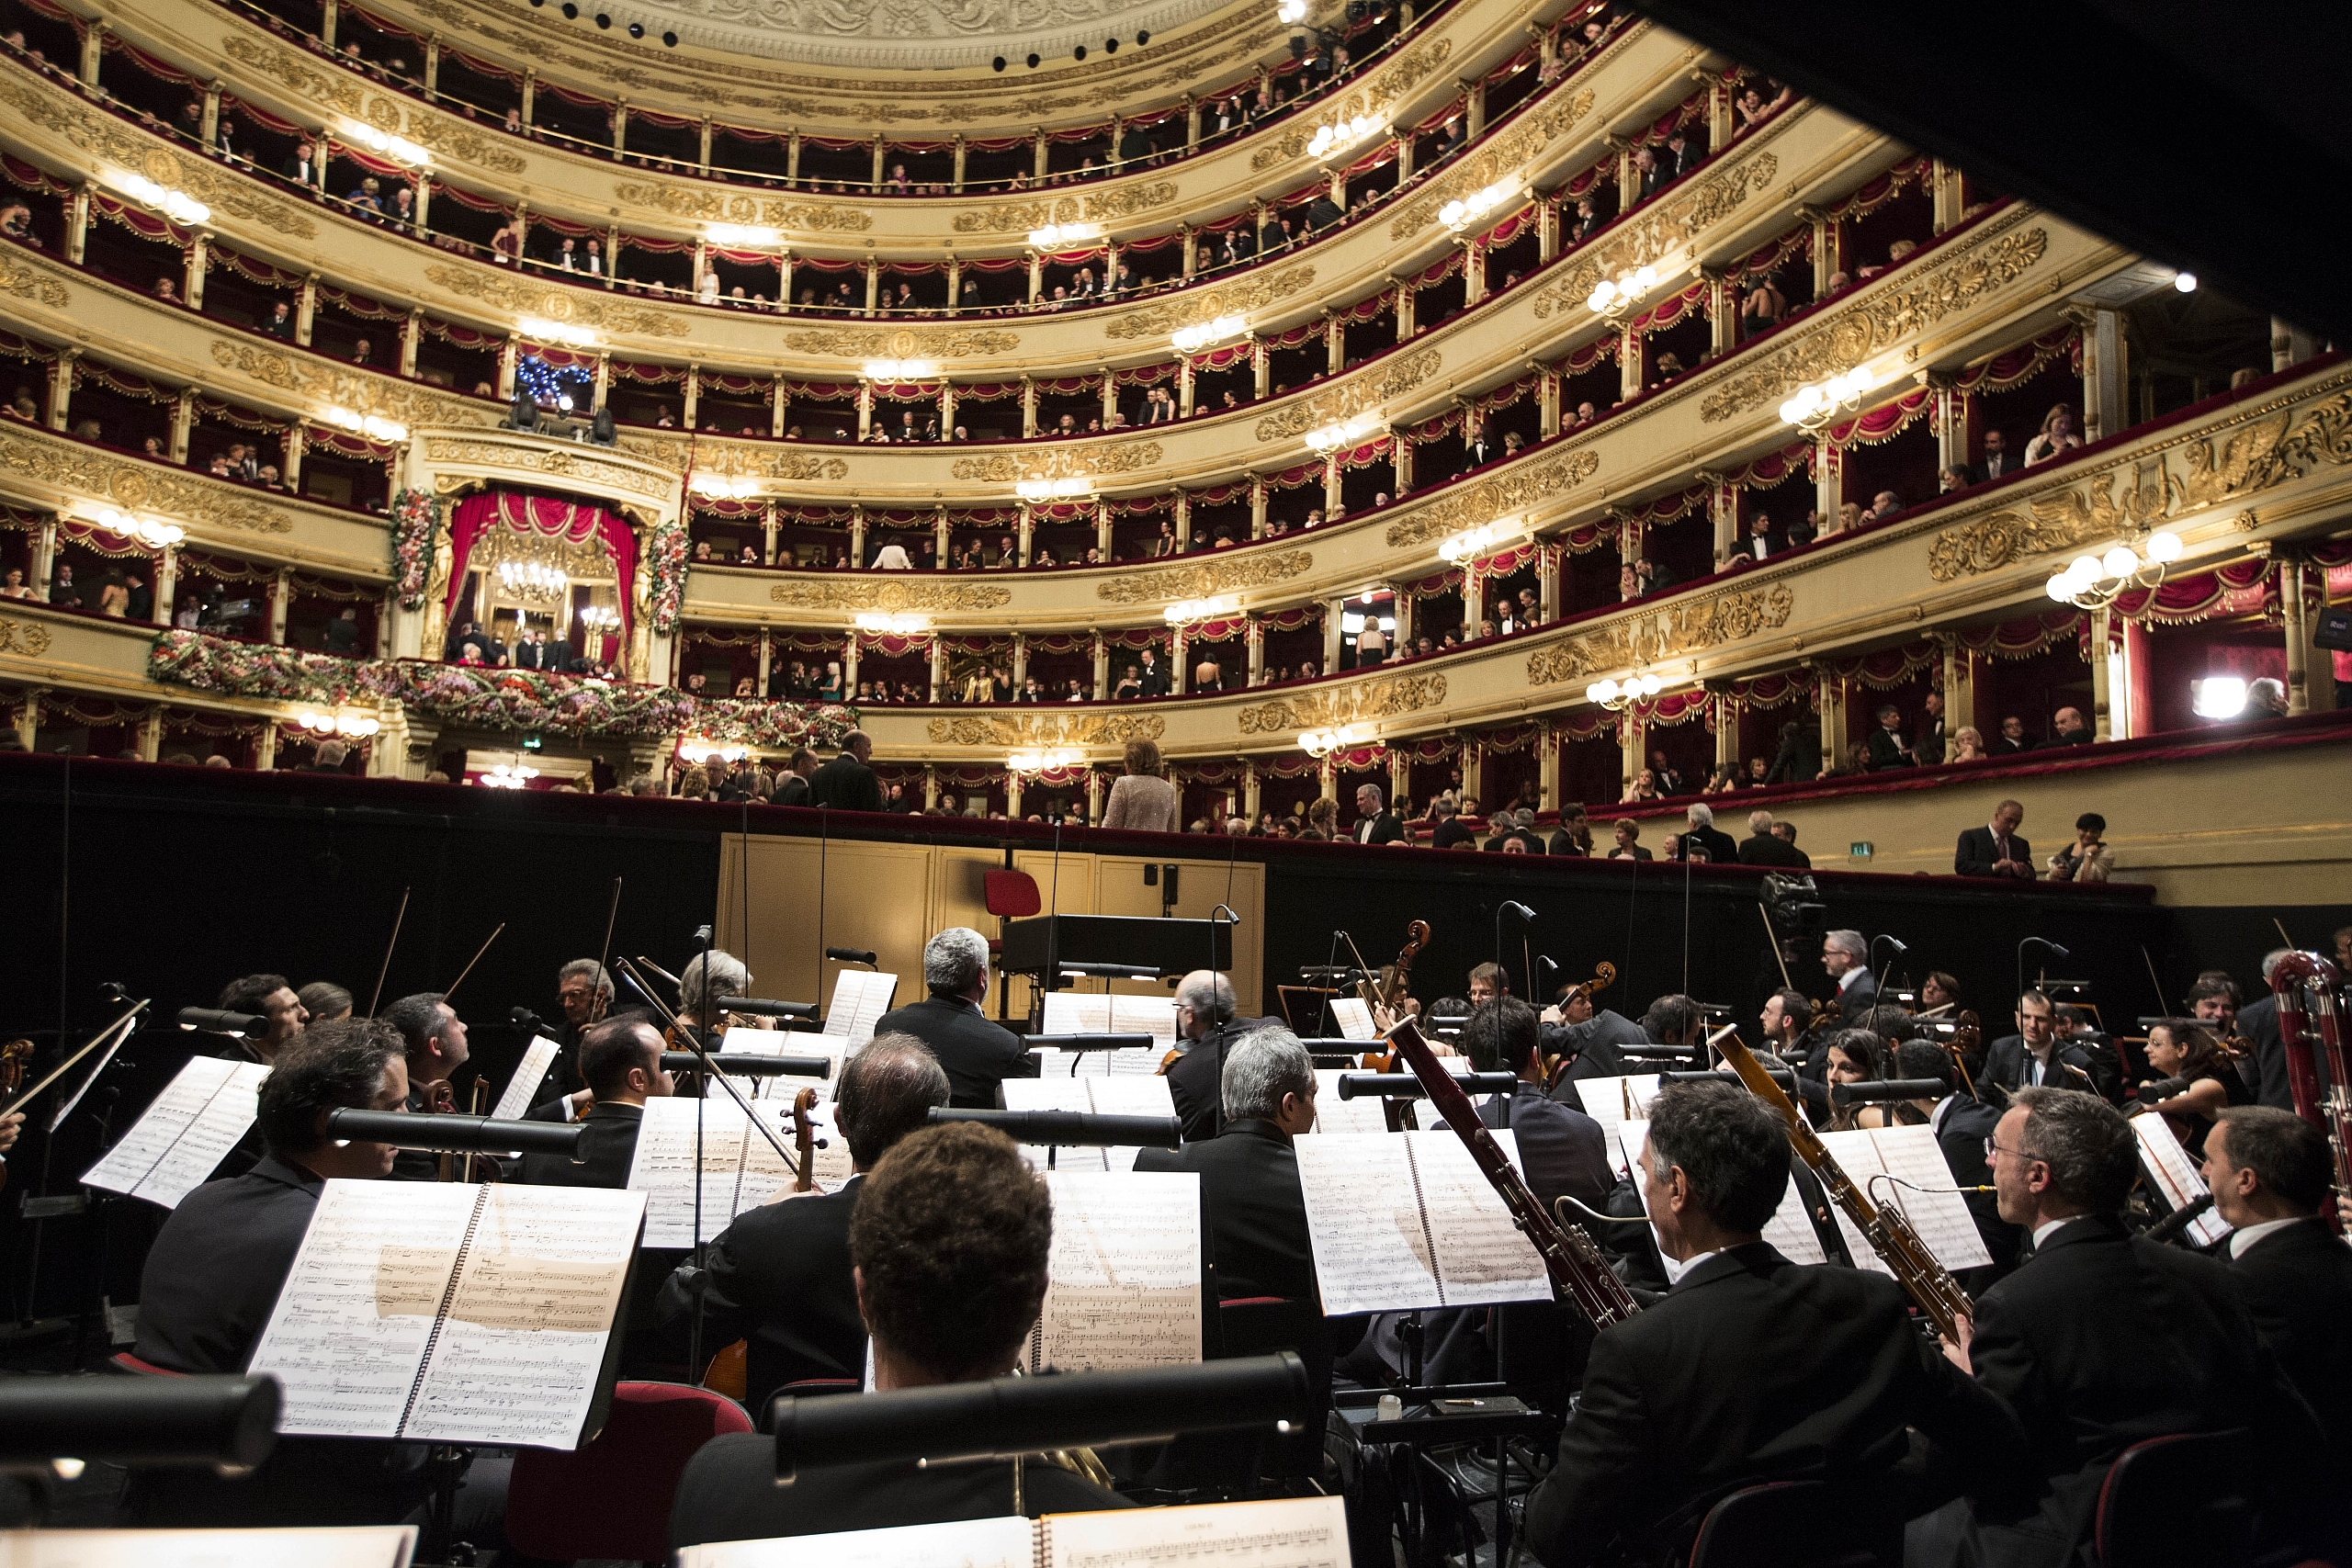 Teatro alla Scala Orchestra